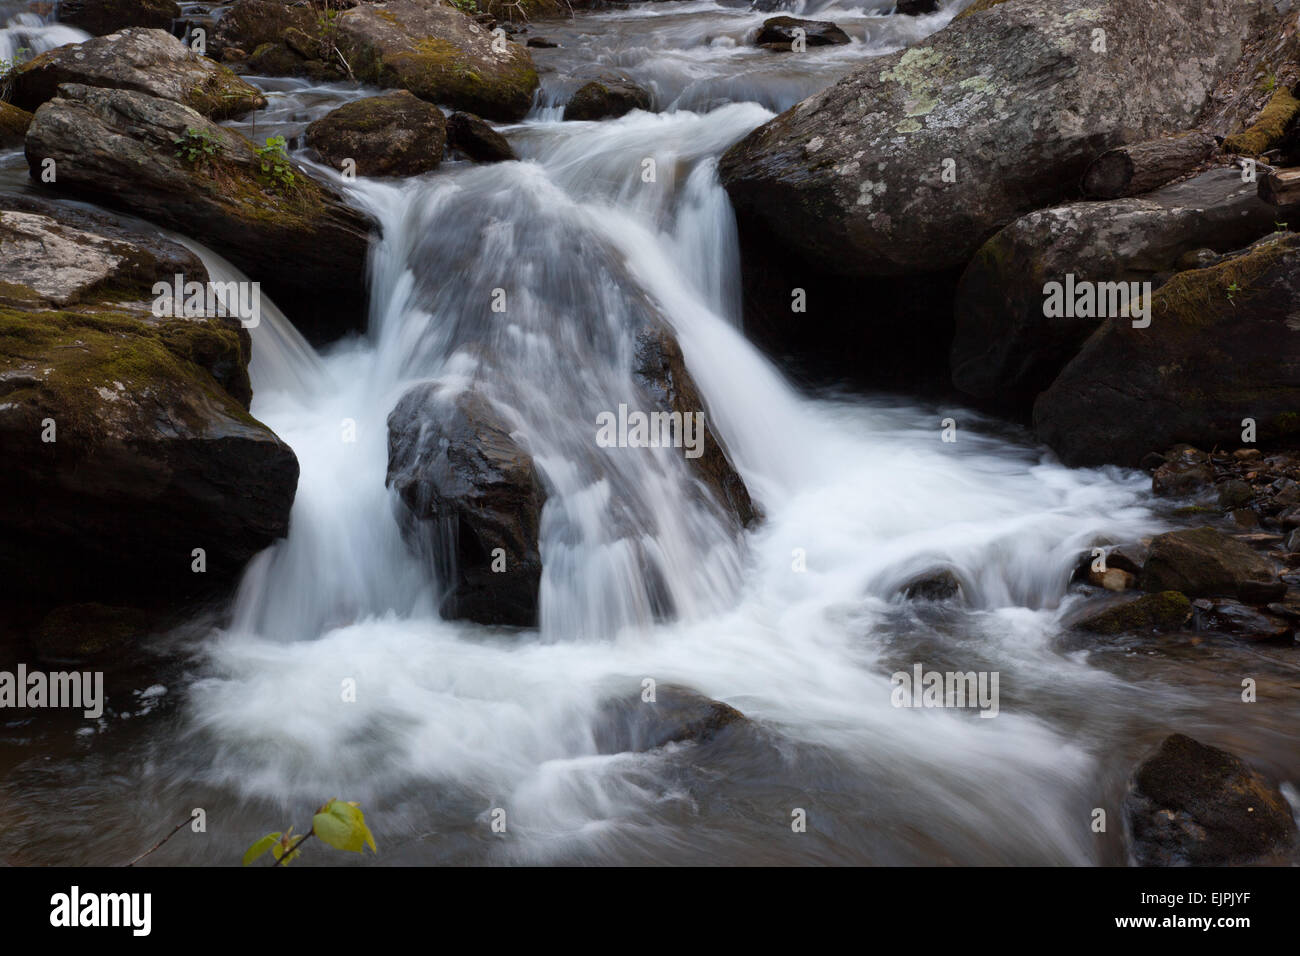 Cascada de agua por piedras cubiertas de musgo Foto de stock